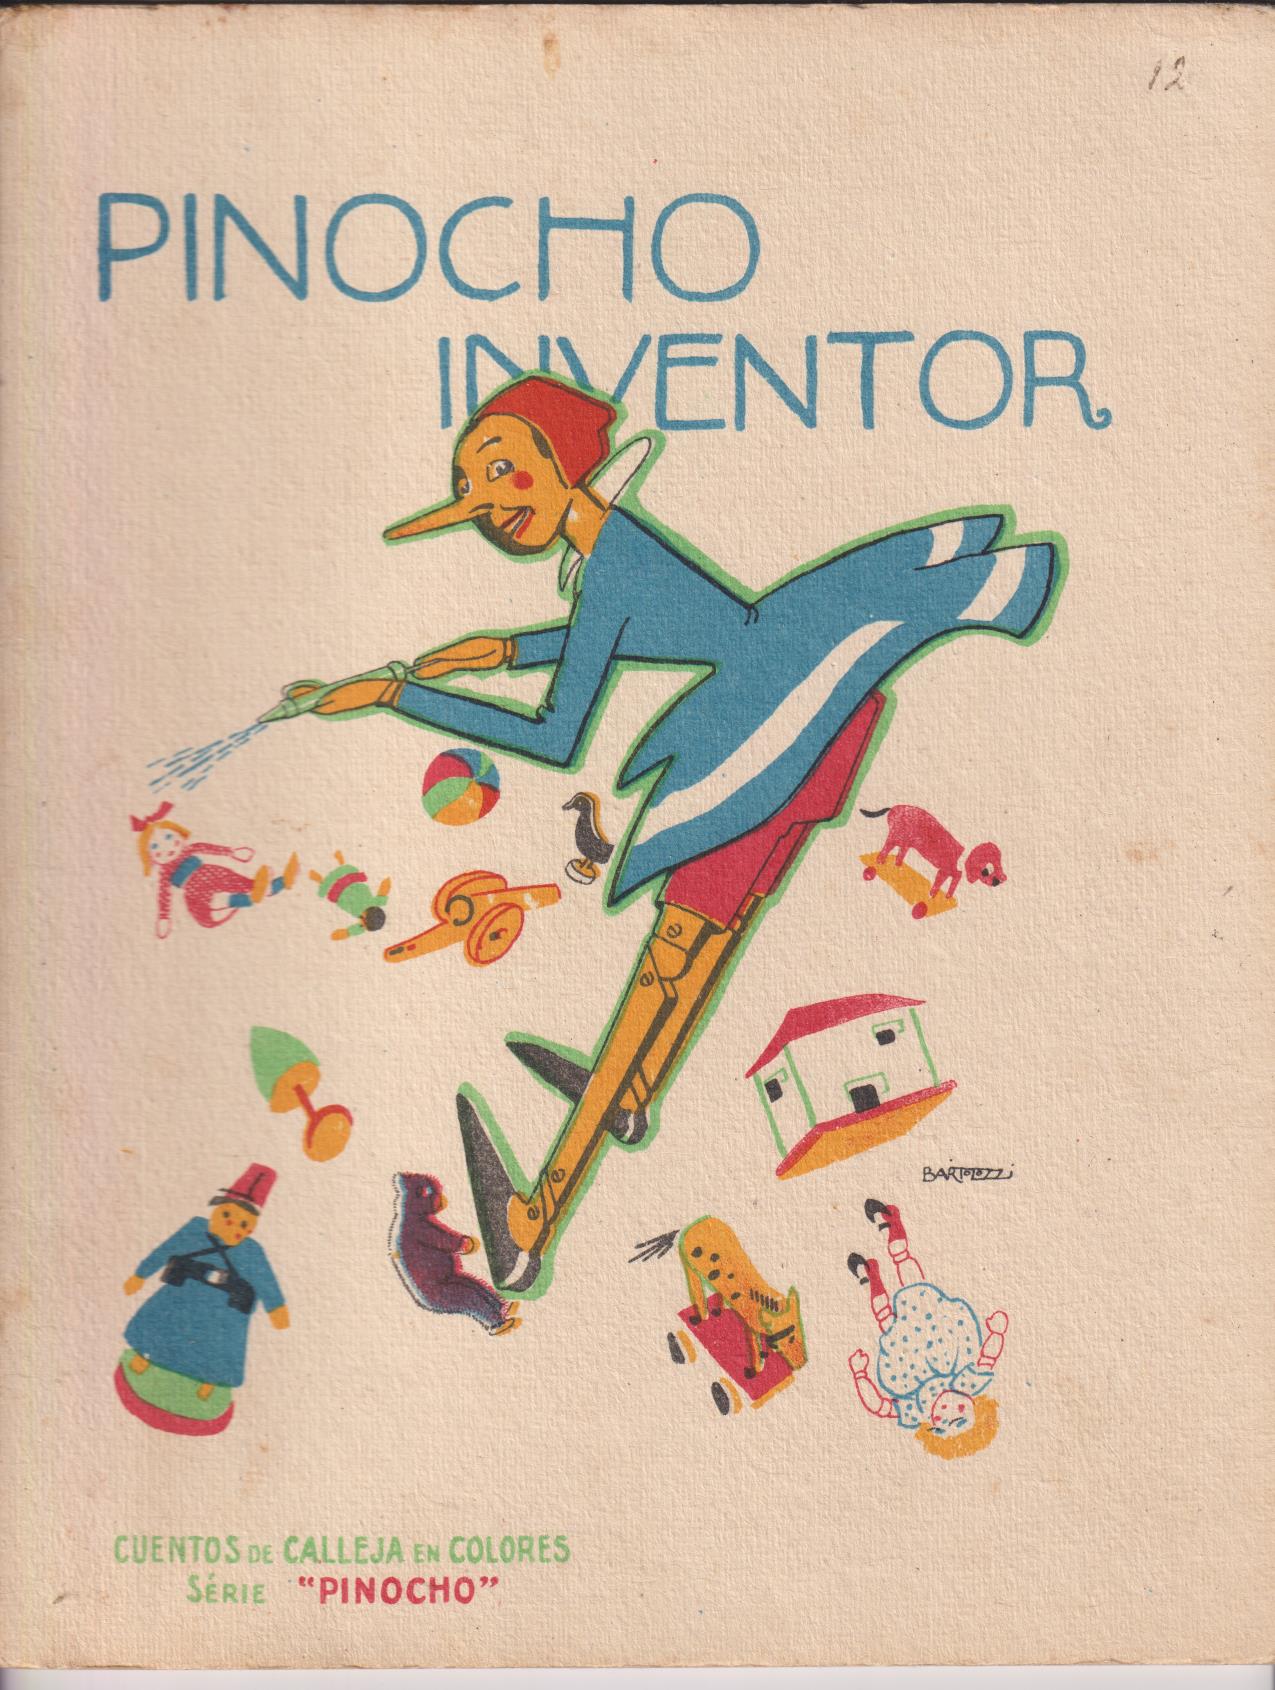 Pinocho nº 12. Pinocho Inventor. Calleja 1919. (28x22) 16 páginas con ilustraciones color. RARO